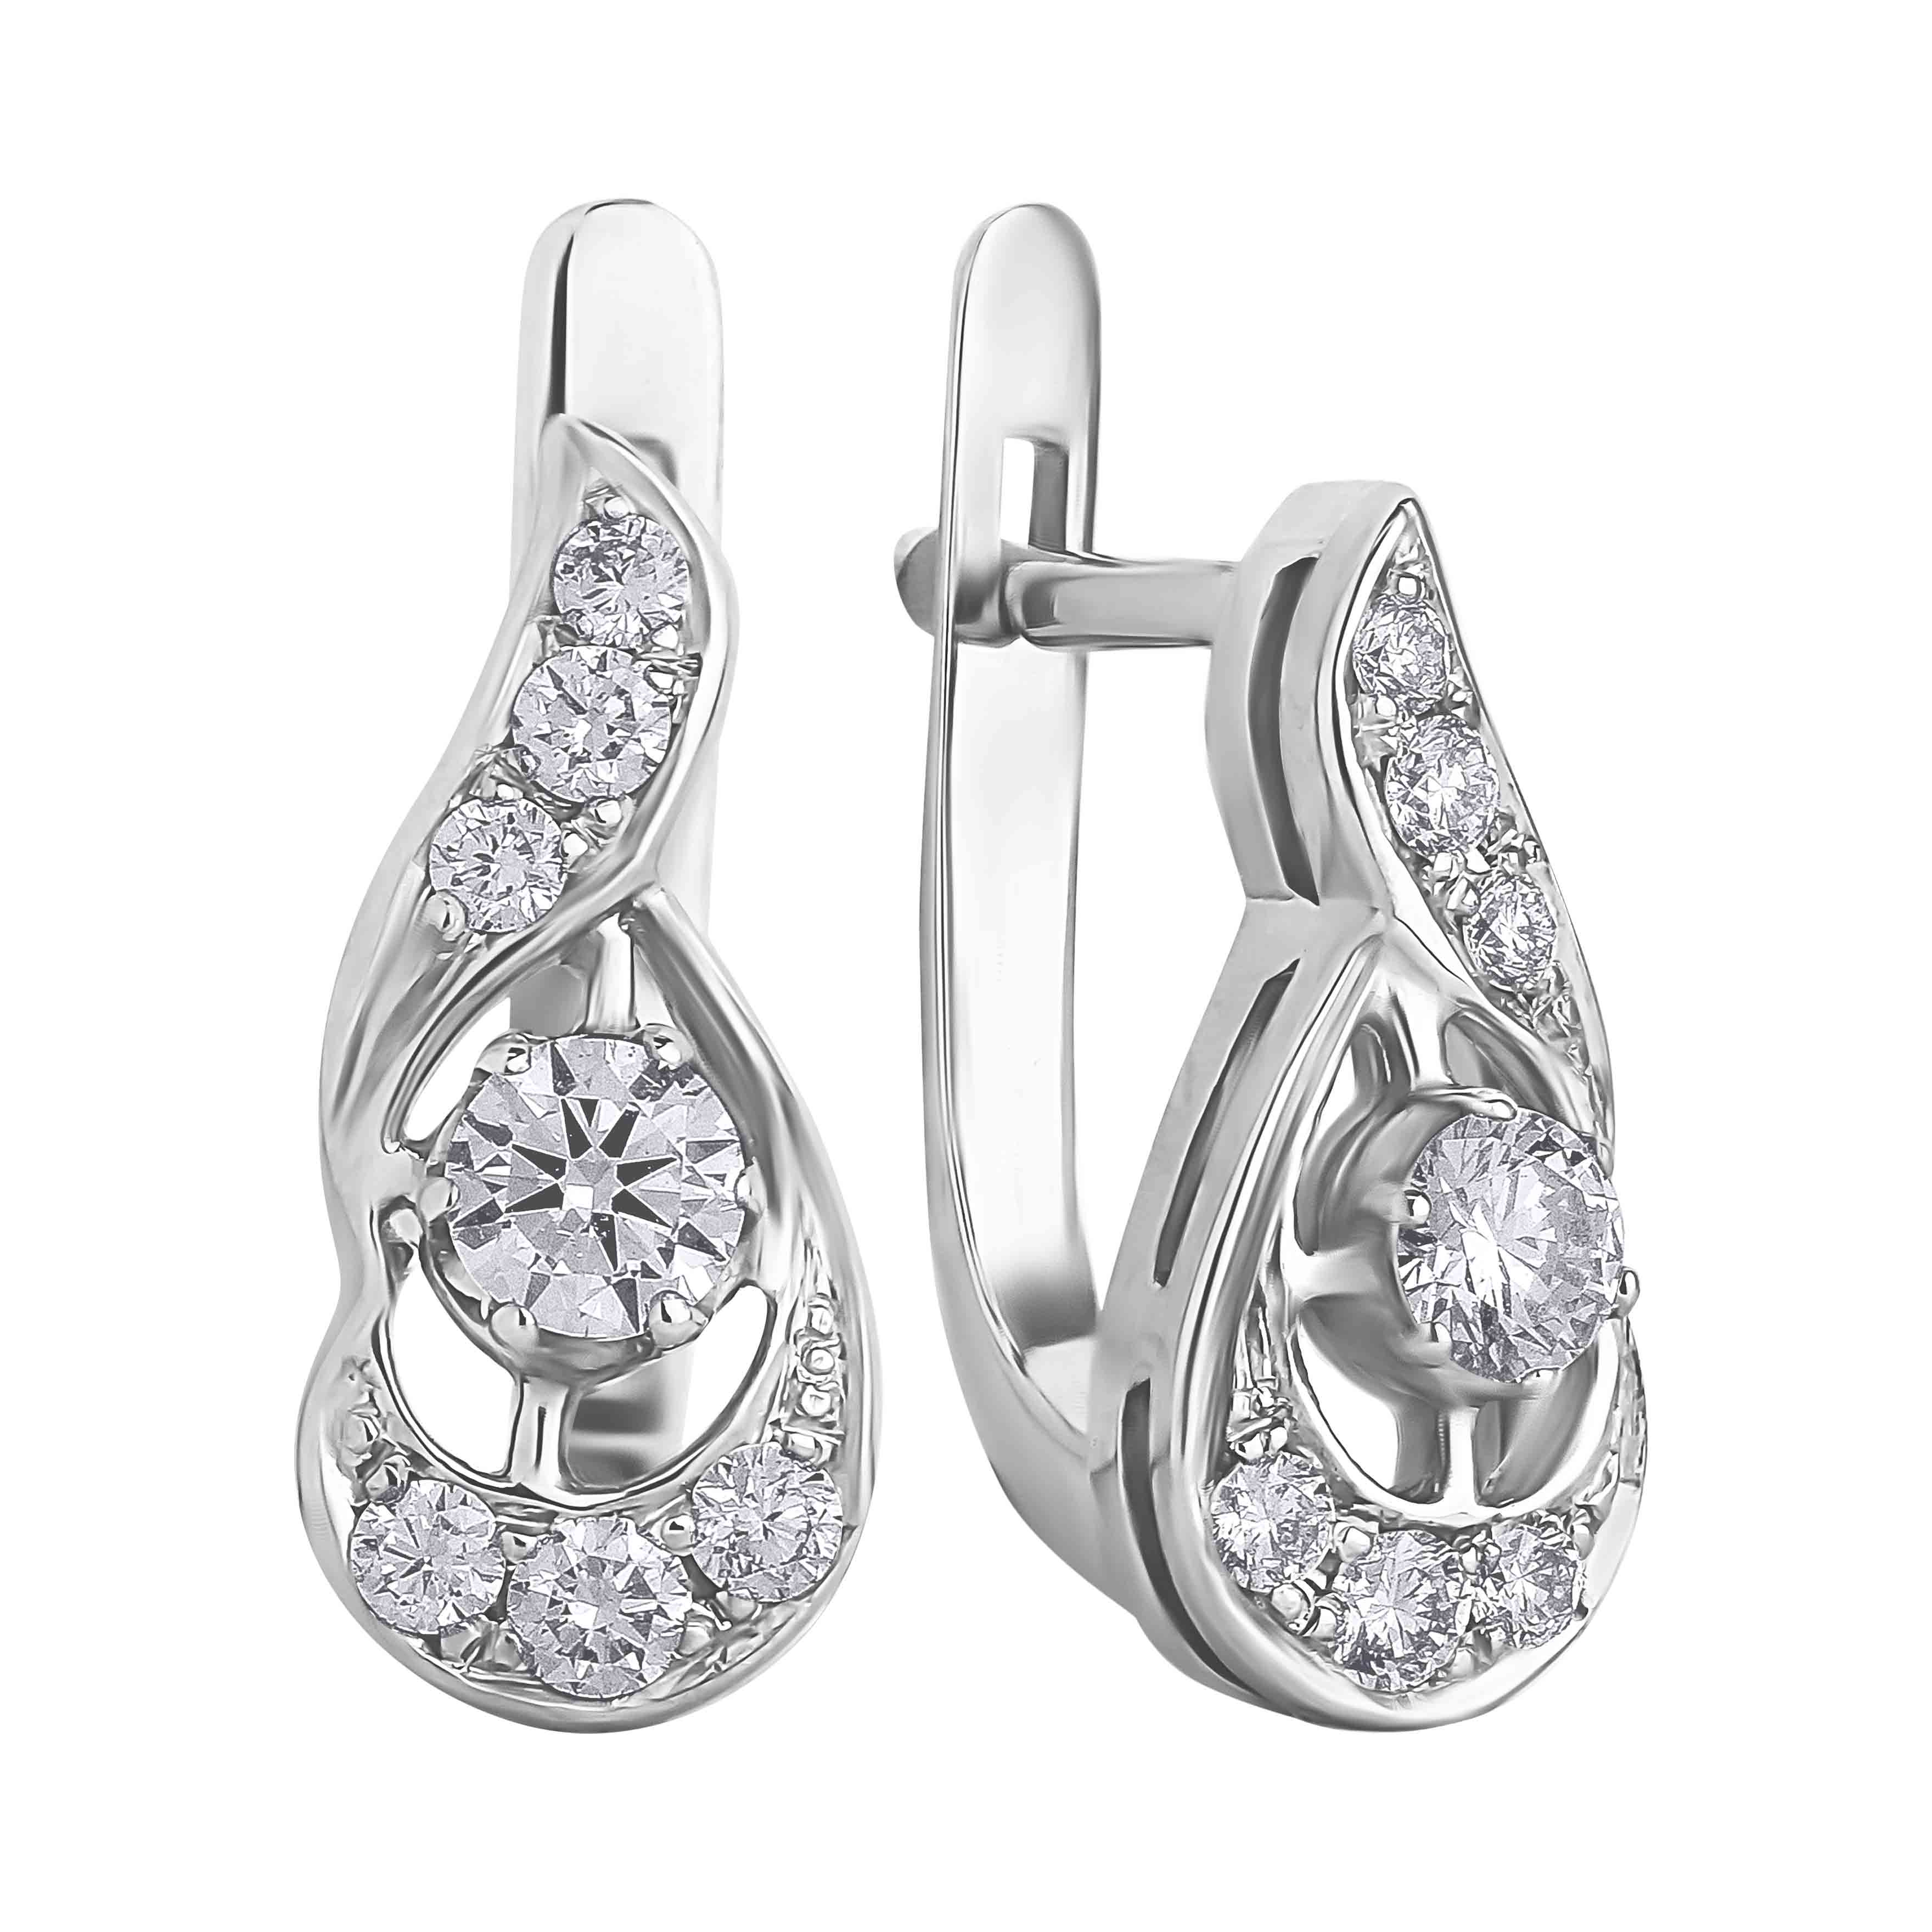 New models 925 Sterling Silver Asscher Cut Created Moissanite Ruby Gemstone  Wedding Simple Ear Studs Earrings Fine Jewelry Gift - AliExpress